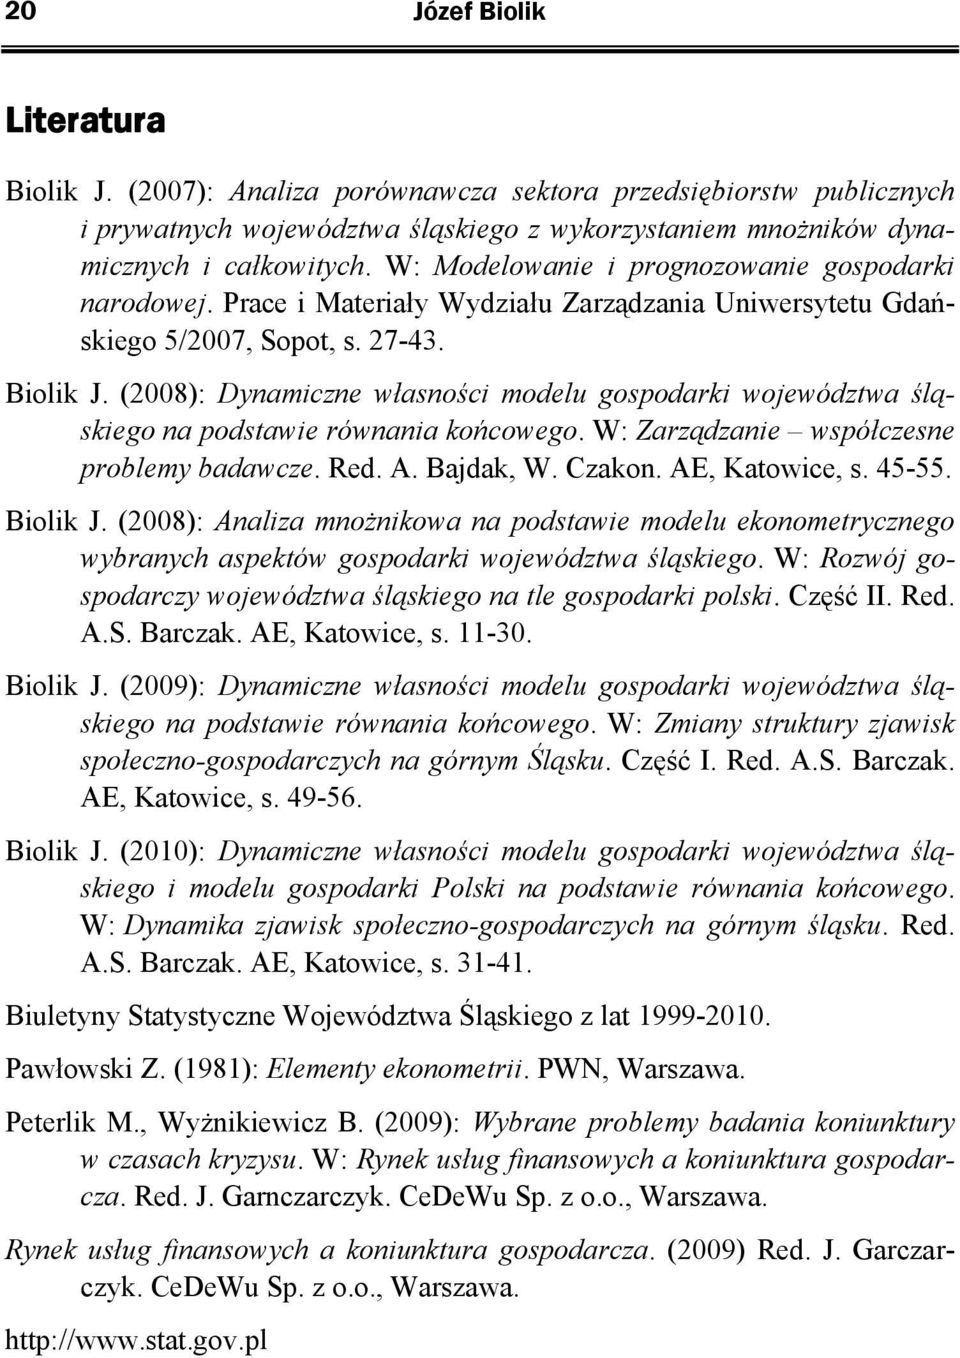 (2008): Dynamiczne własności modelu gospodarki województwa śląskiego na podstawie równania końcowego. W: Zarządzanie współczesne problemy badawcze. Red. A. Bajdak, W. Czakon. AE, Katowice, s. 45-55.